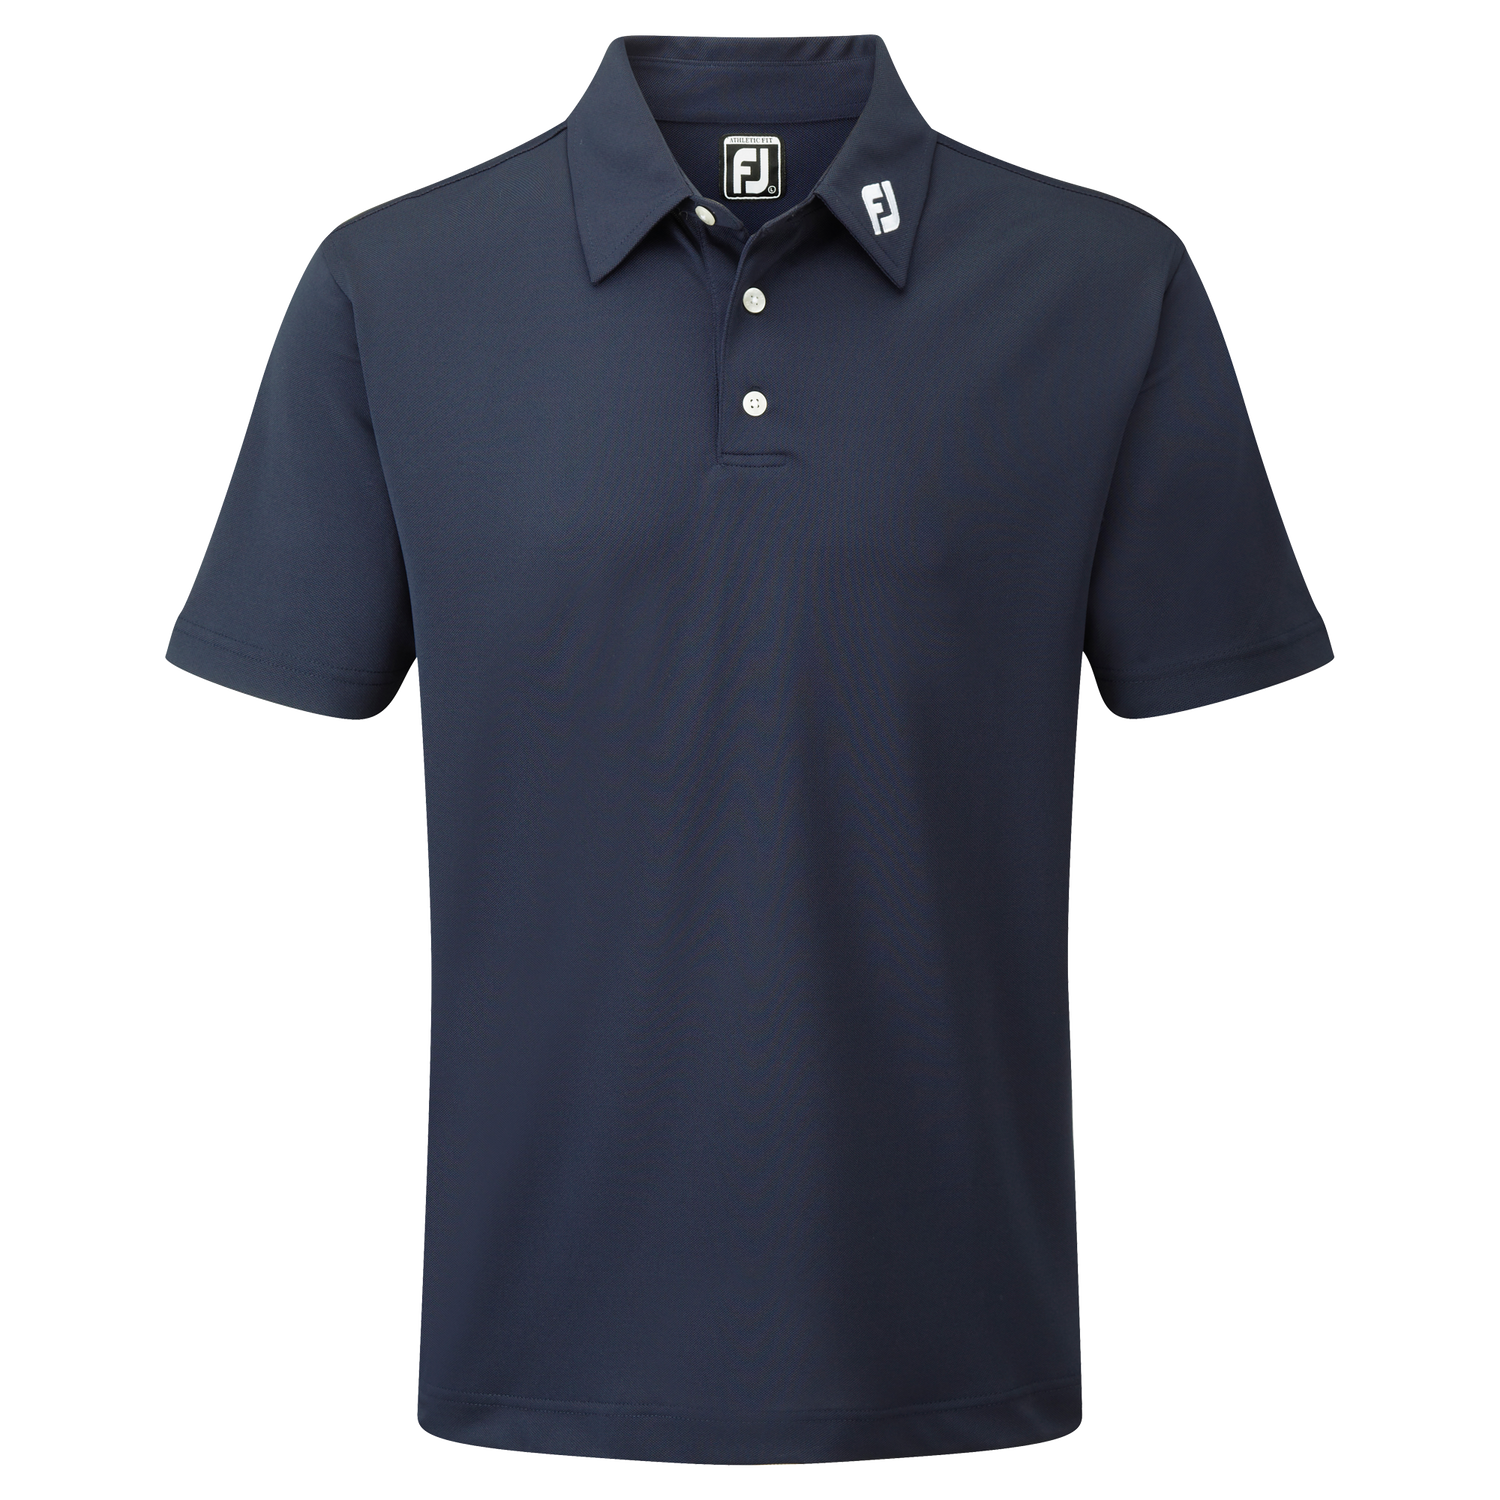 Footjoy Golf Stretch Pique Polo Shirt Navy Blue S 